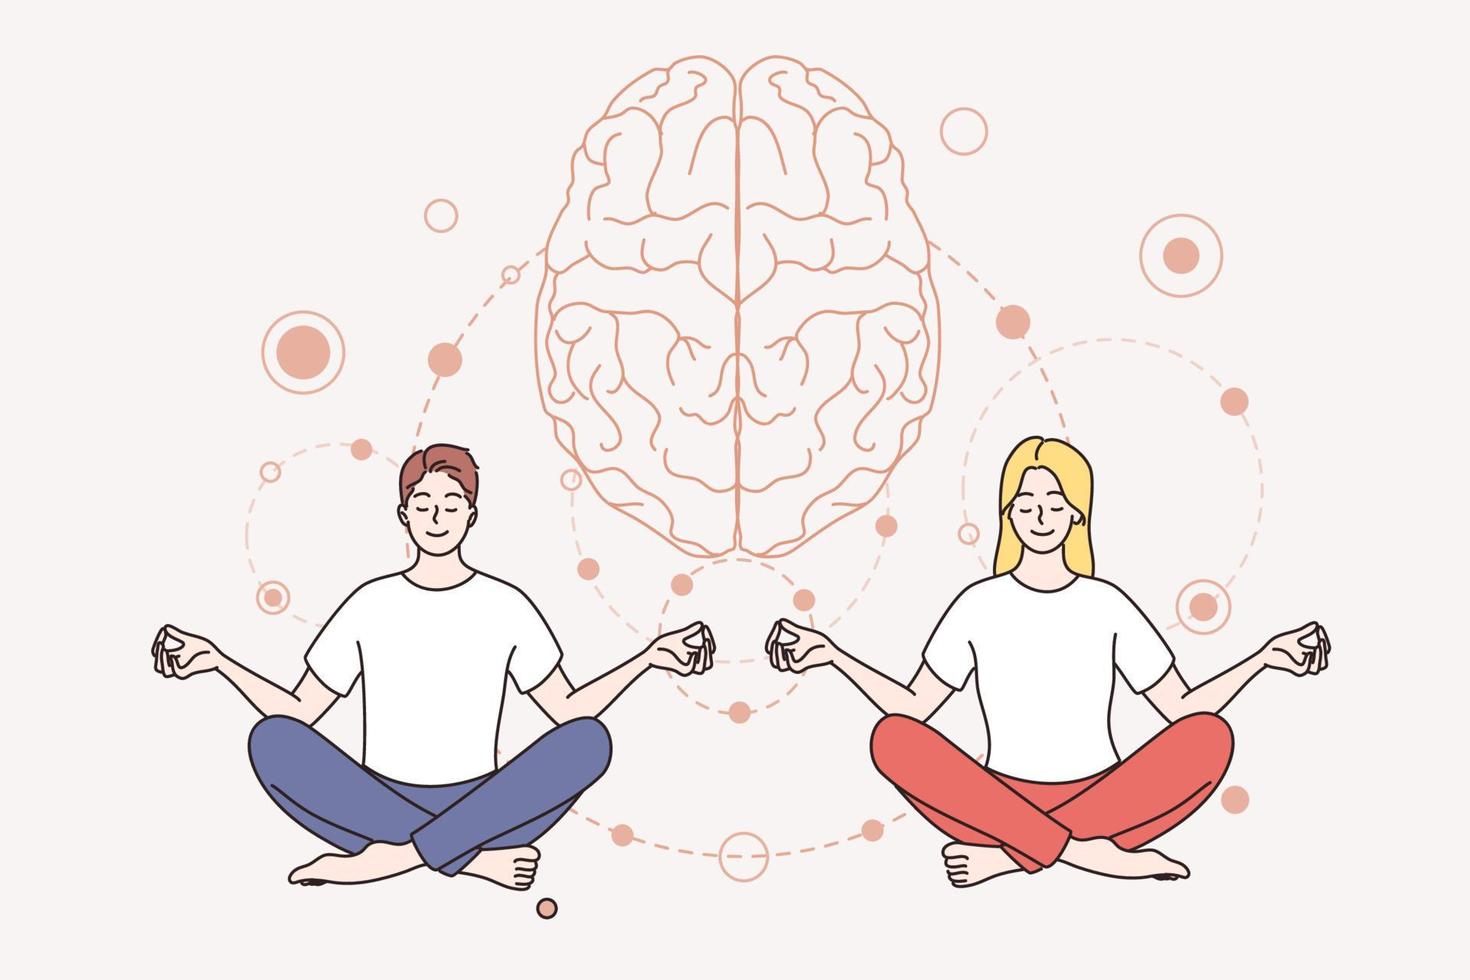 concept de méditation et de santé mentale. jeune couple souriant homme et femme personnages de dessins animés assis méditation gardant l'esprit en paix illustration vectorielle vecteur